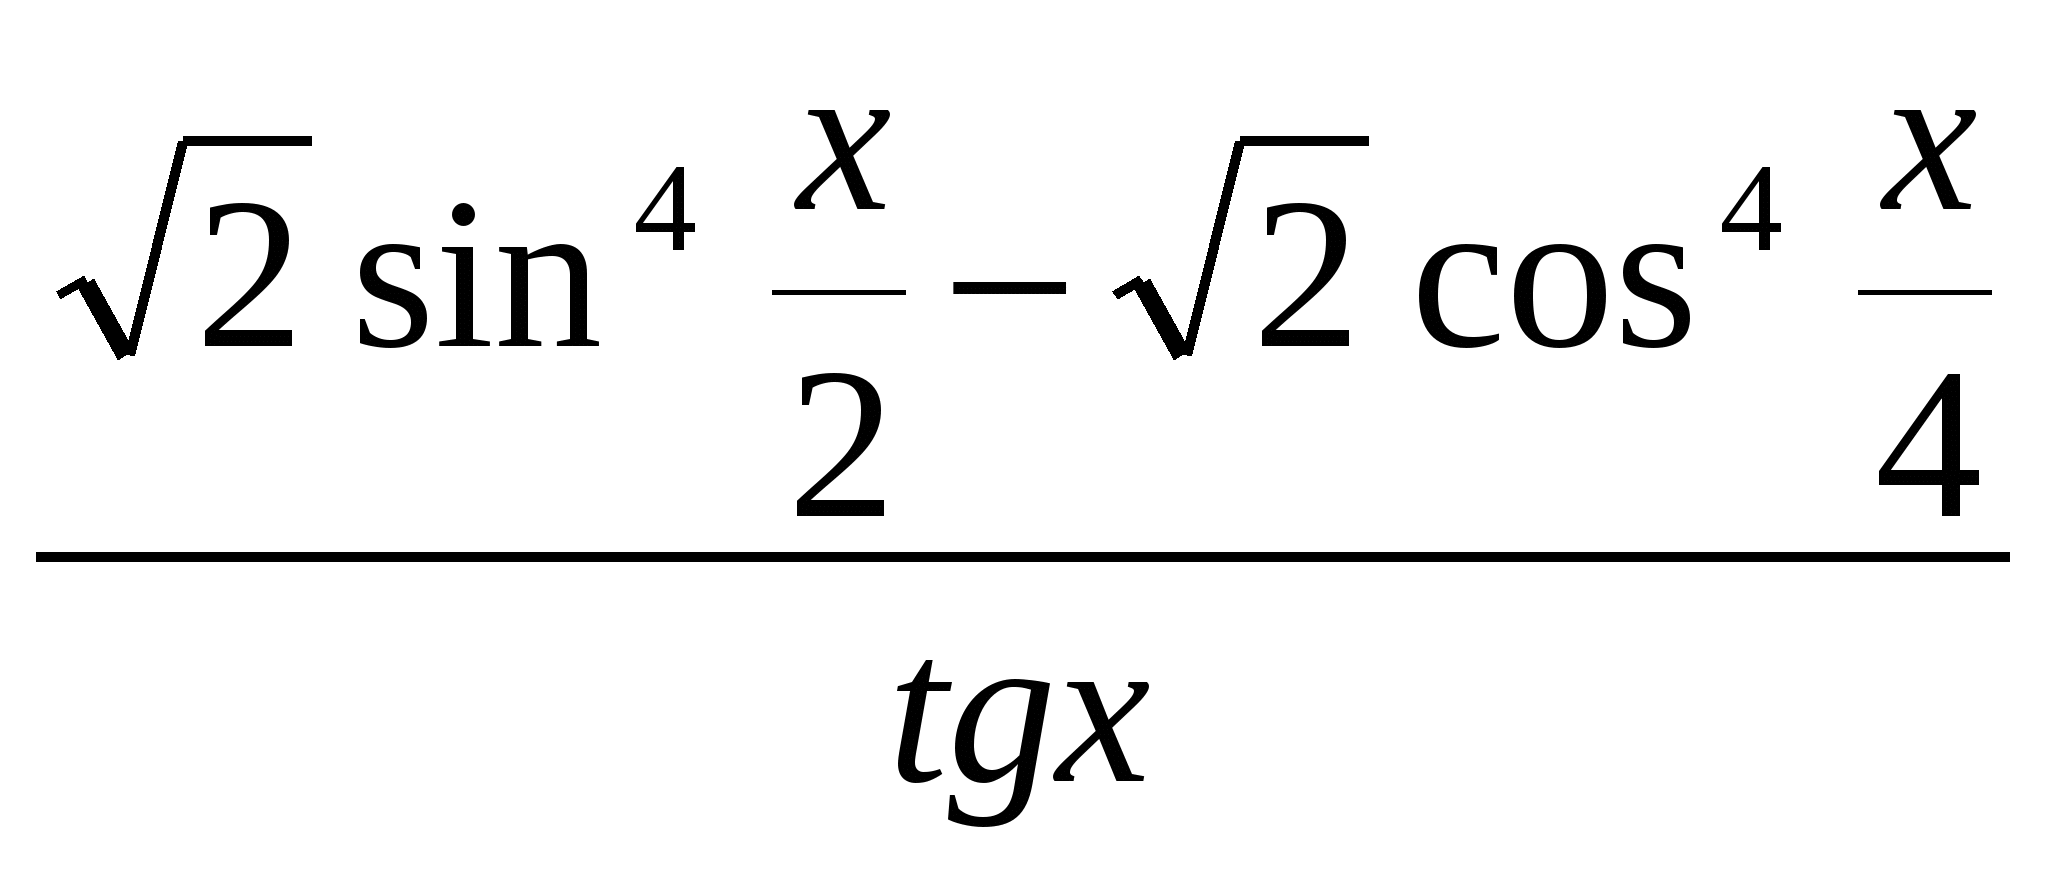 Индивидуально-ориентированный учебный план для учащихся 10 класса Глава 2. Тригонометрические уравнения (11 часов)